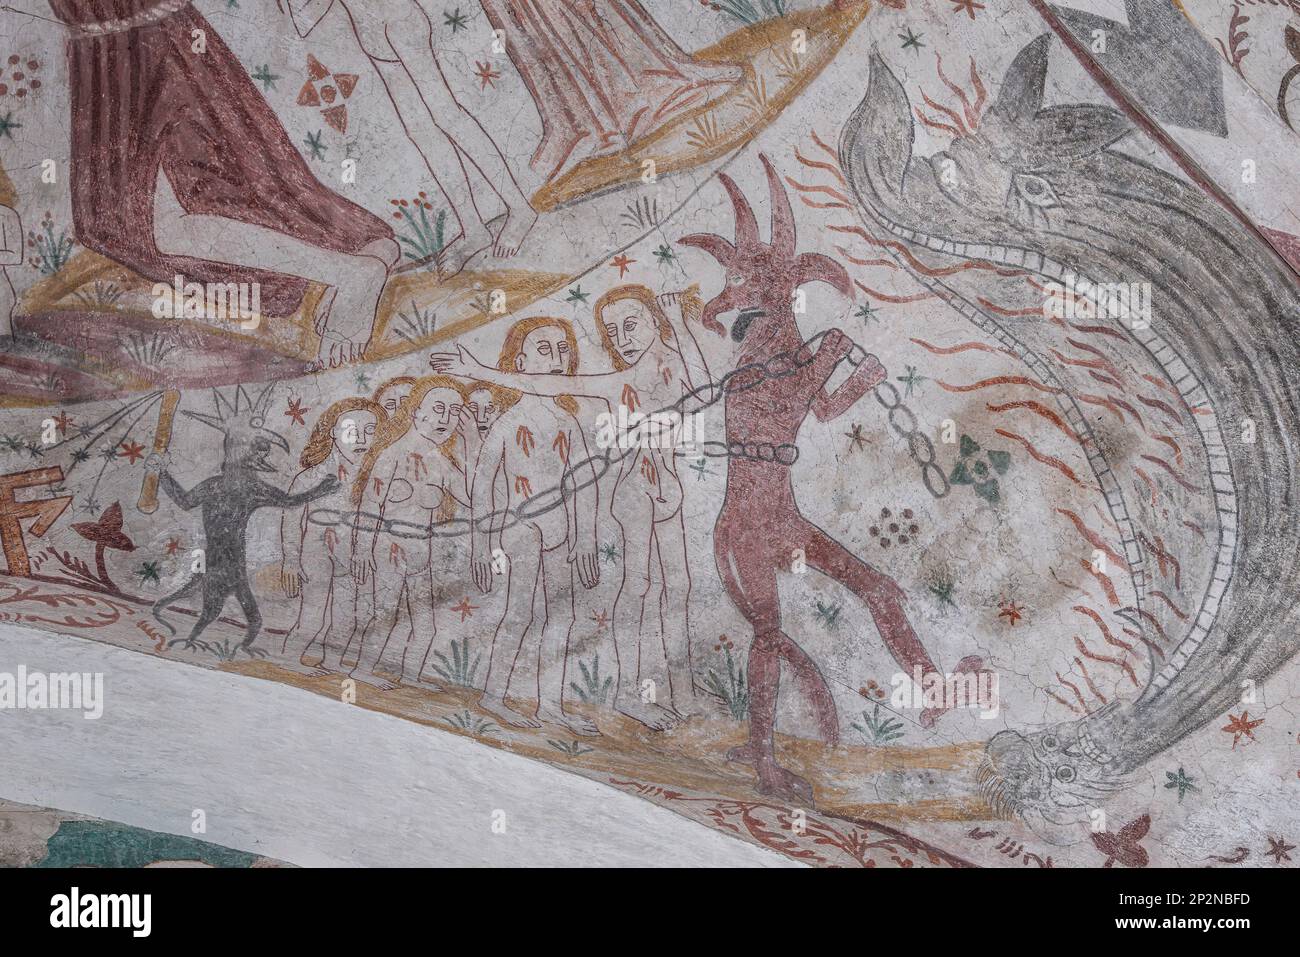 Il diavolo trascina le persone alle fauci dell'inferno, un antico murale nella chiesa di Keldby, Danimarca, 10 ottobre 2022 Foto Stock